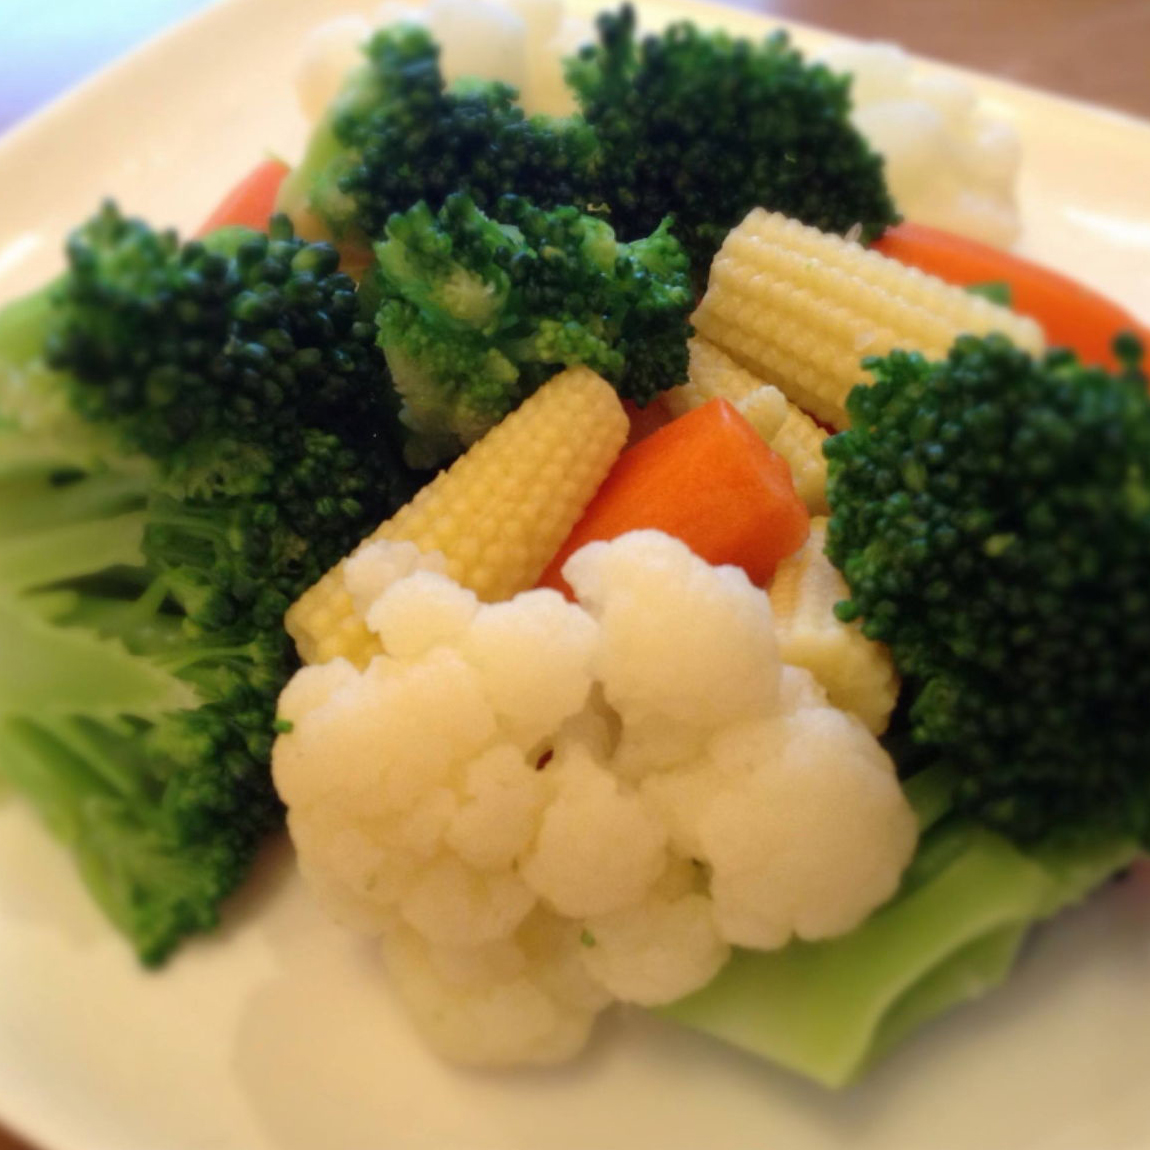 色とりどりな冷凍野菜